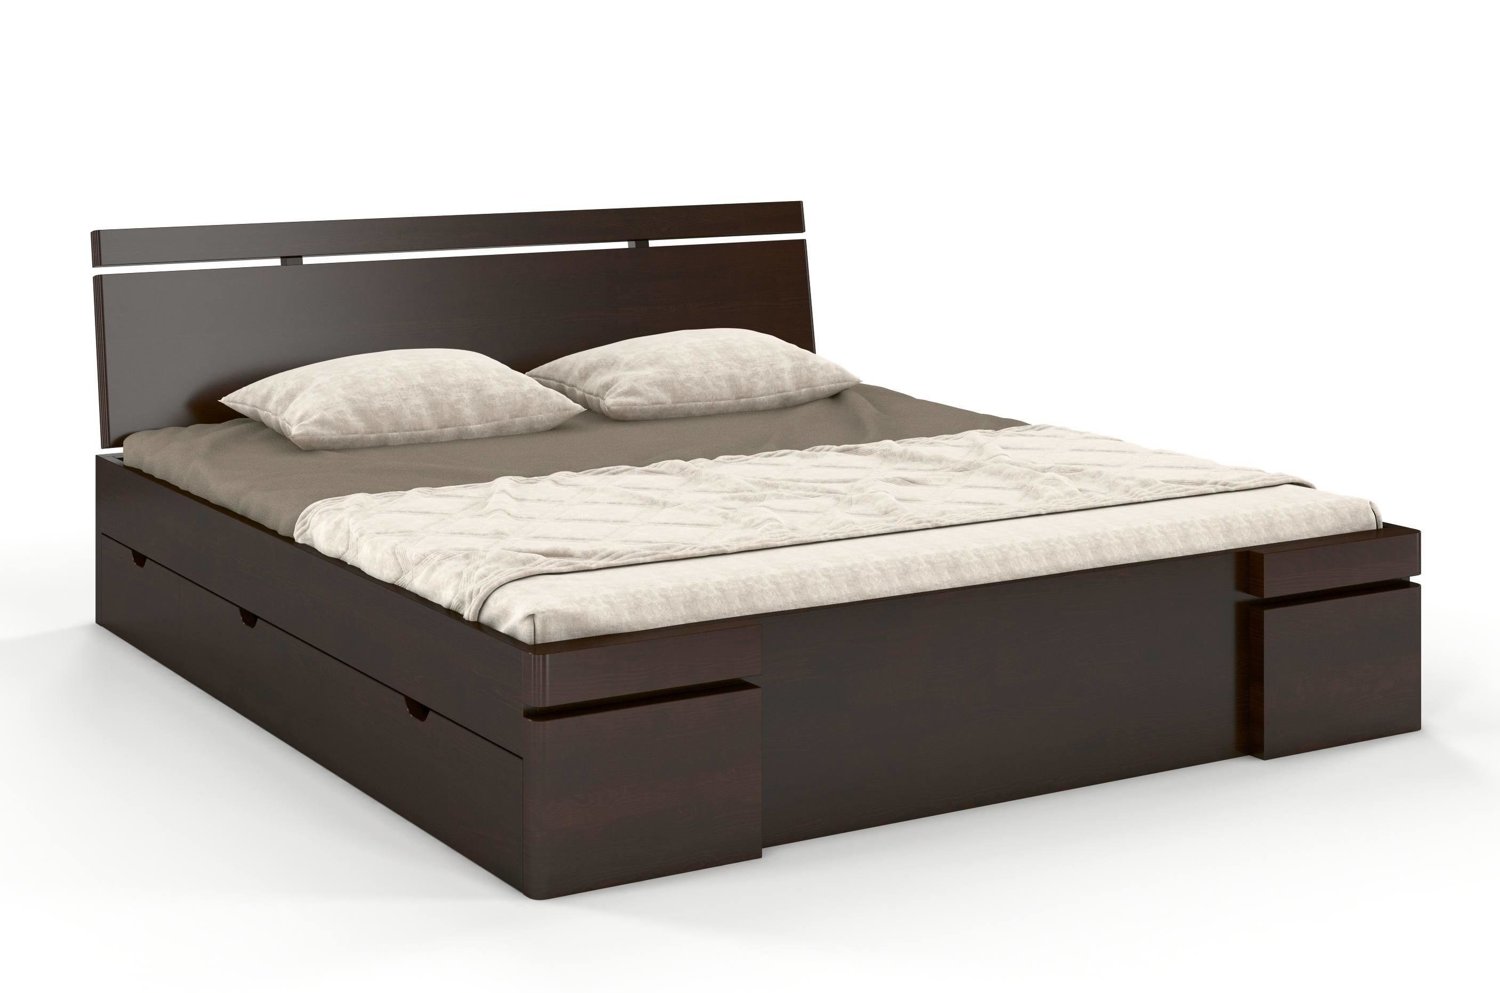 Łóżko drewniane sosnowe z szufladami Skandica SPARTA Maxi & DR / 120x200 cm, kolor palisander